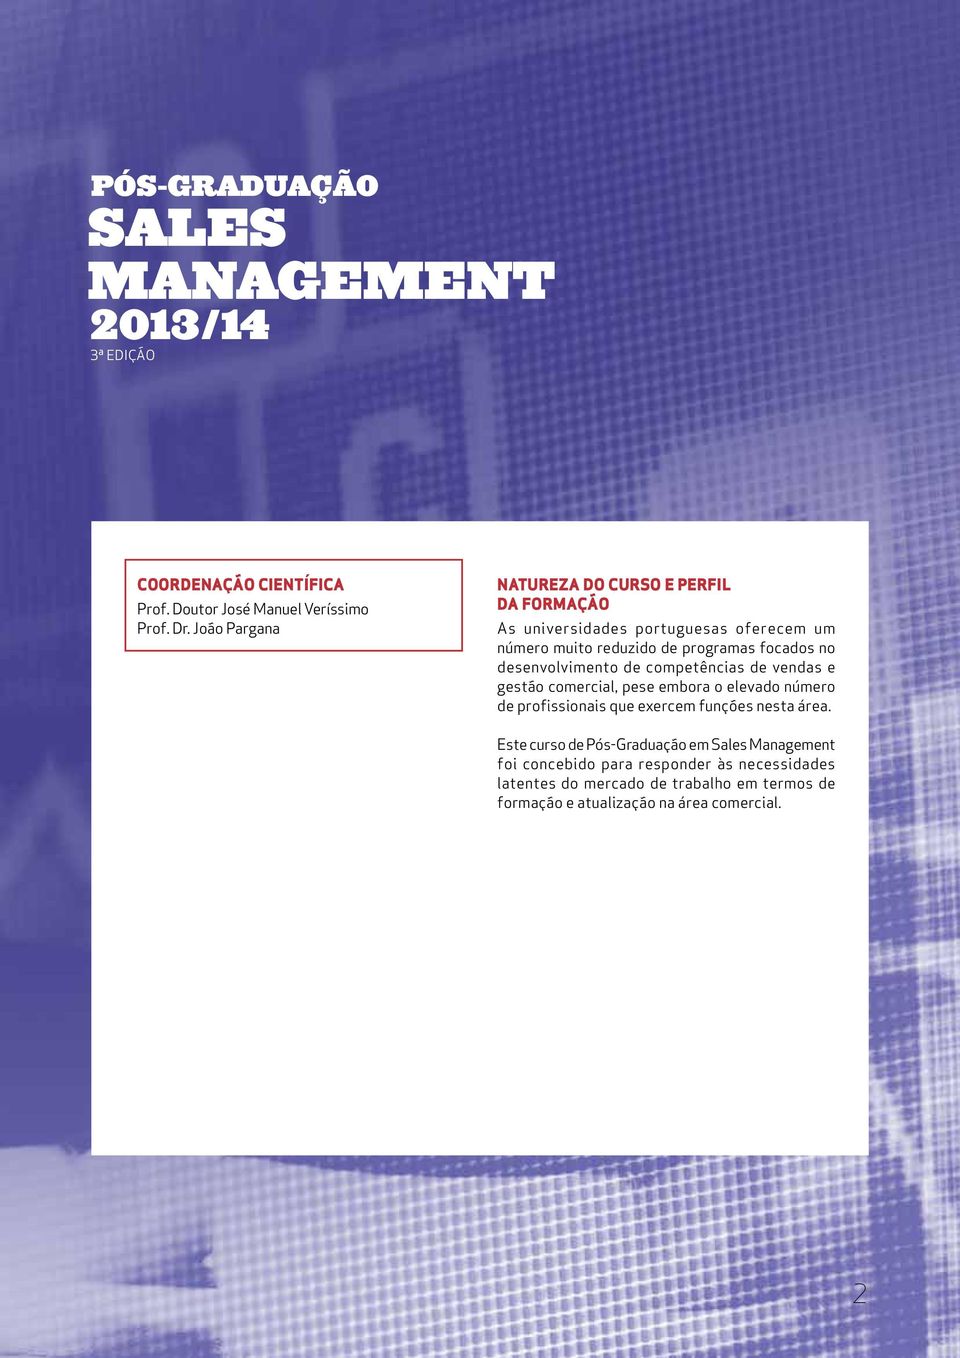 desenvolvimento de competências de vendas e gestão comercial, pese embora o elevado número de profissionais que exercem funções nesta área.